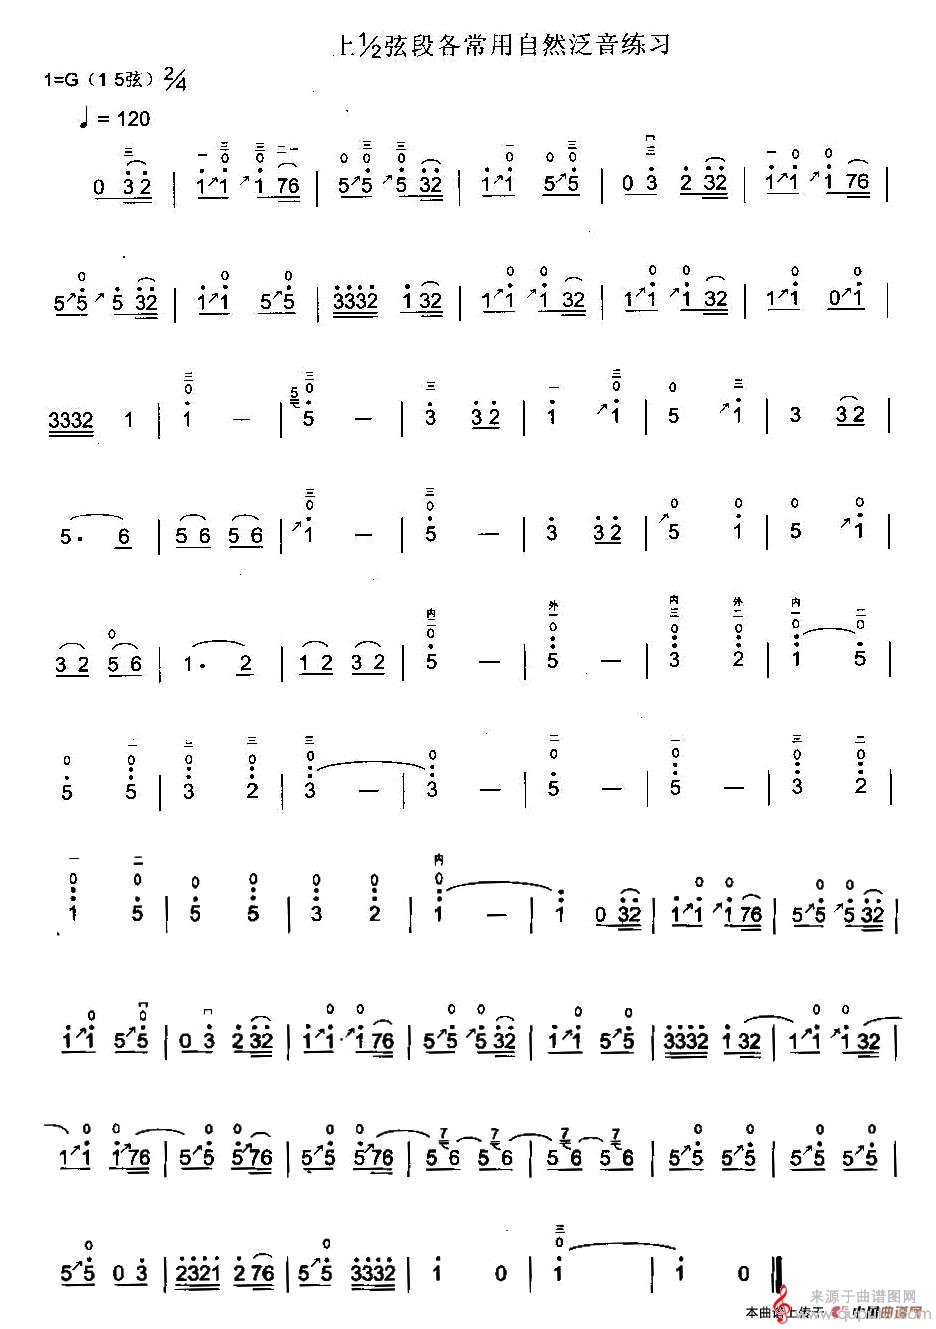 二胡上1/2弦段各常用自然泛音练习